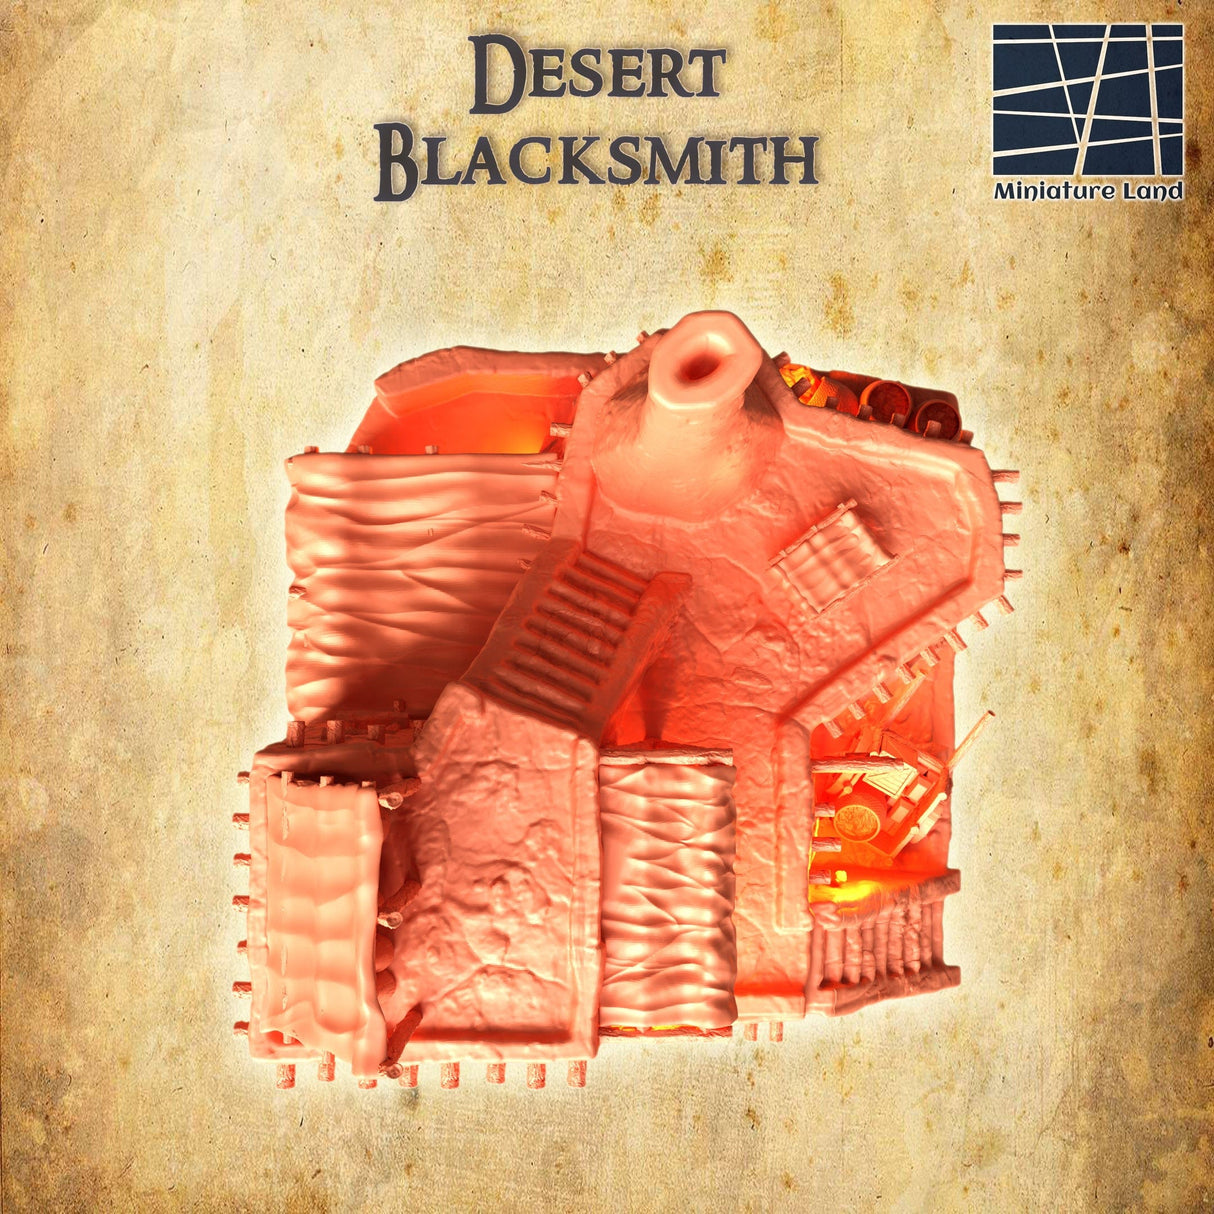 Tabletop Terrain Building Desert Blacksmith